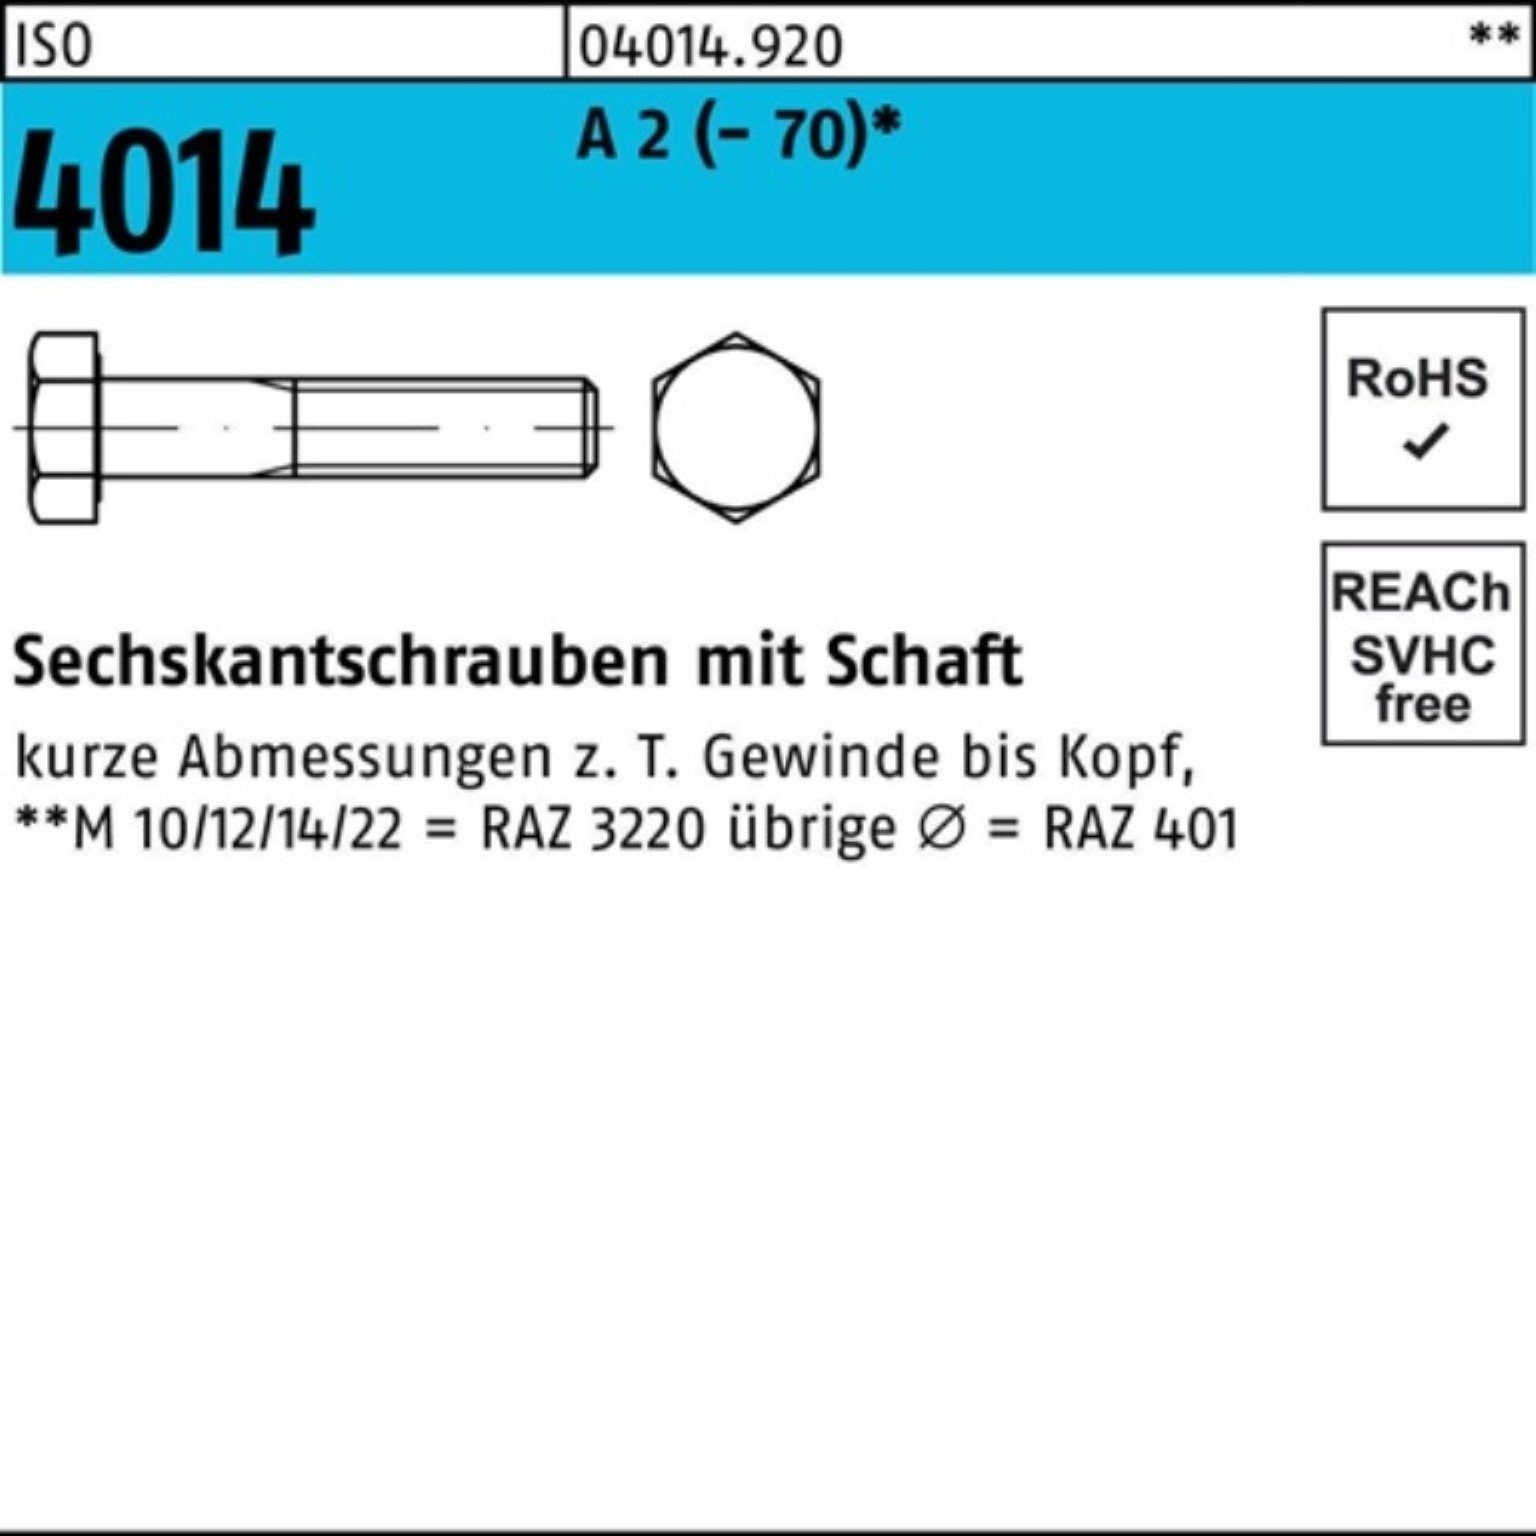 Bufab Sechskantschraube 100er Pack Sechskantschraube ISO 4014 Schaft M24x 220 A 2 (70) 1 St